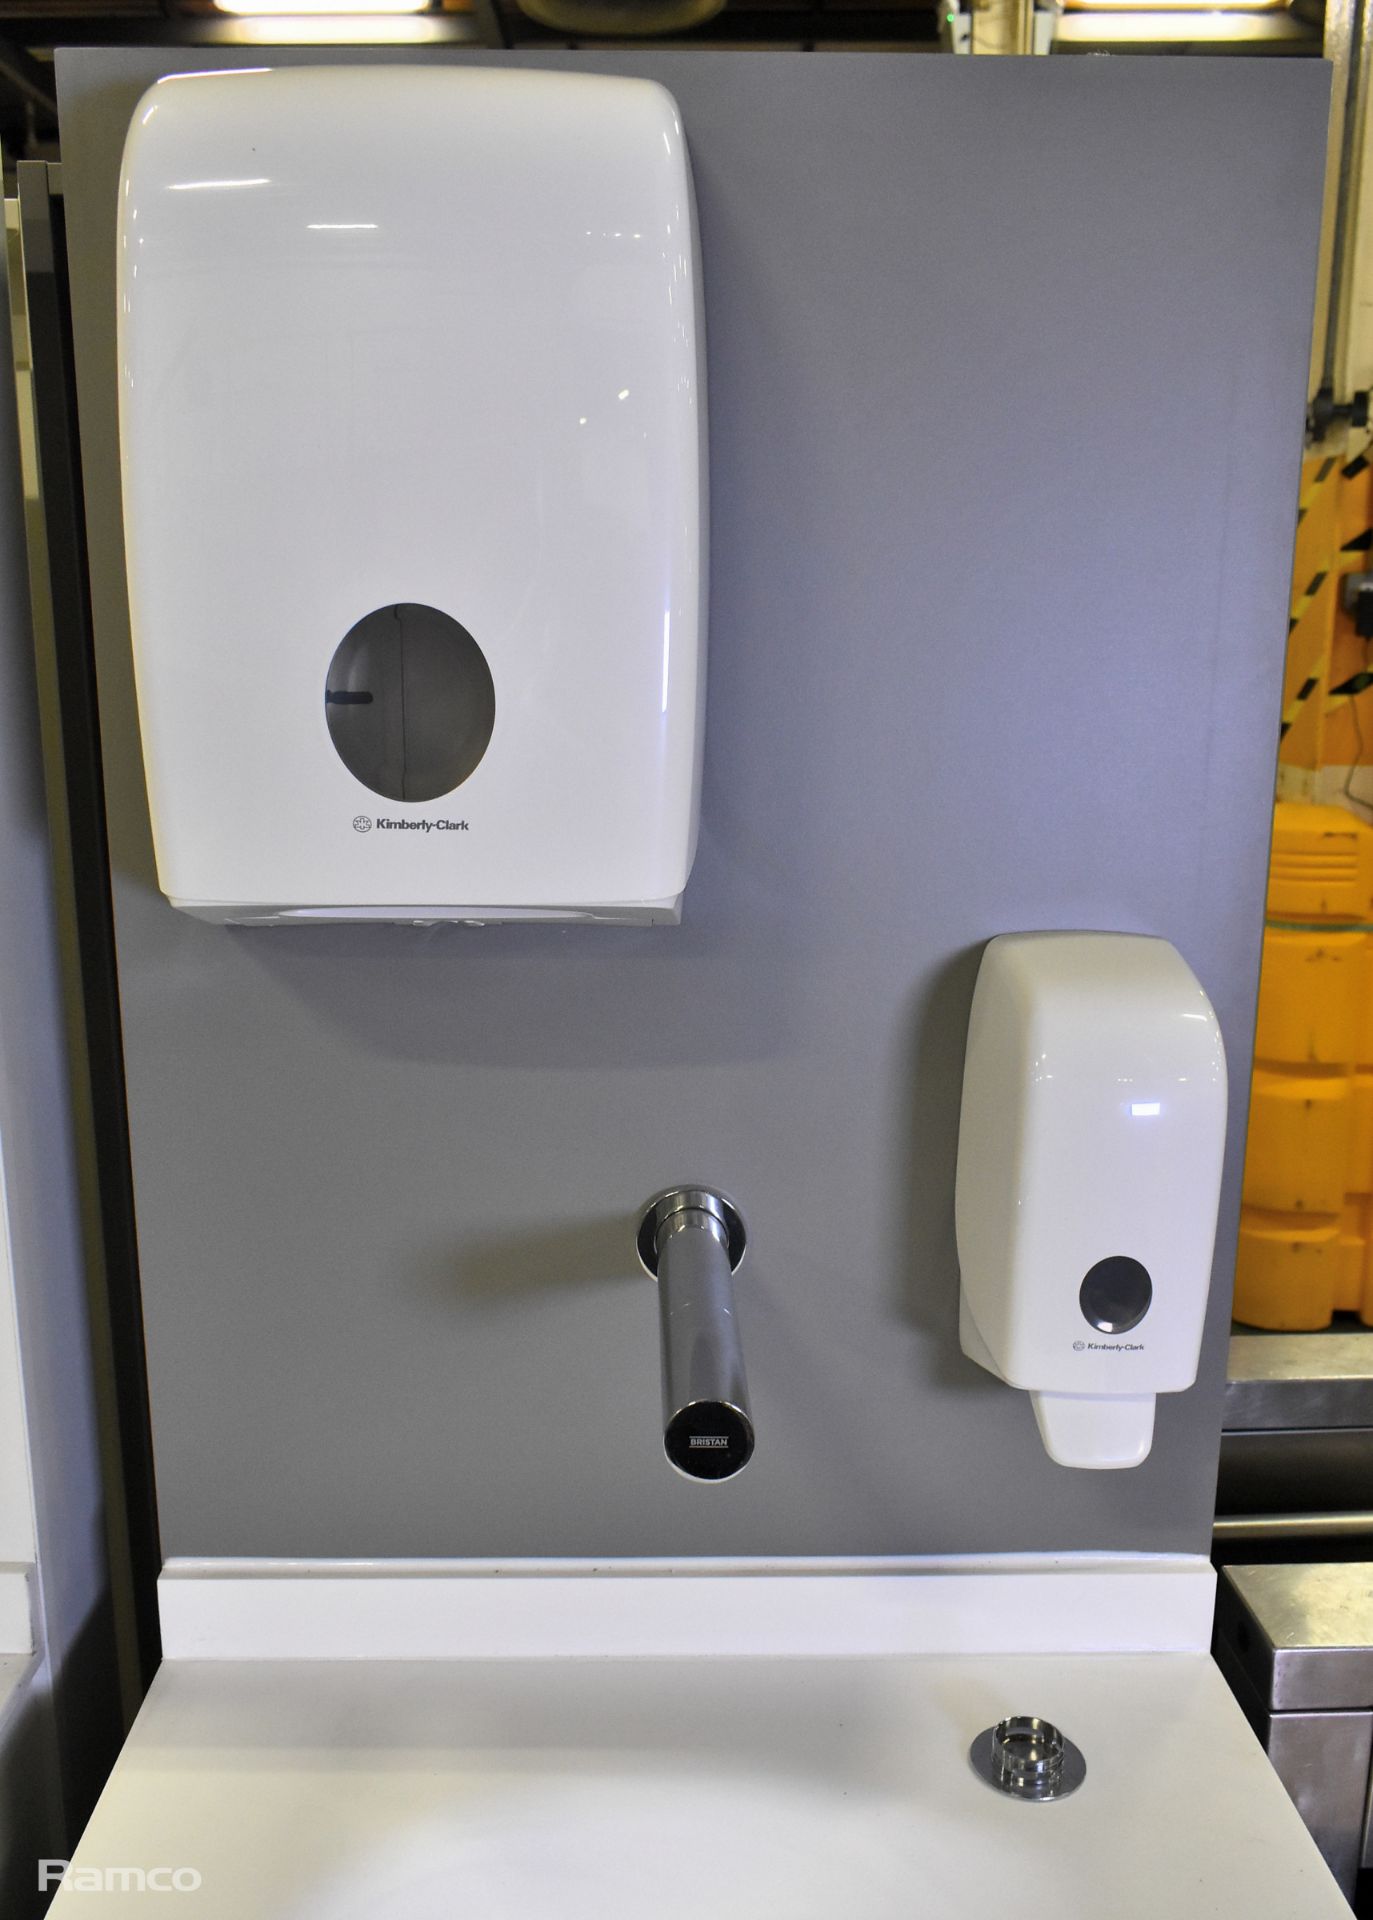 Portable hand wash station with under counter storage & Armitage Shanks mixer tap L 600 x W 680 - Bild 2 aus 5